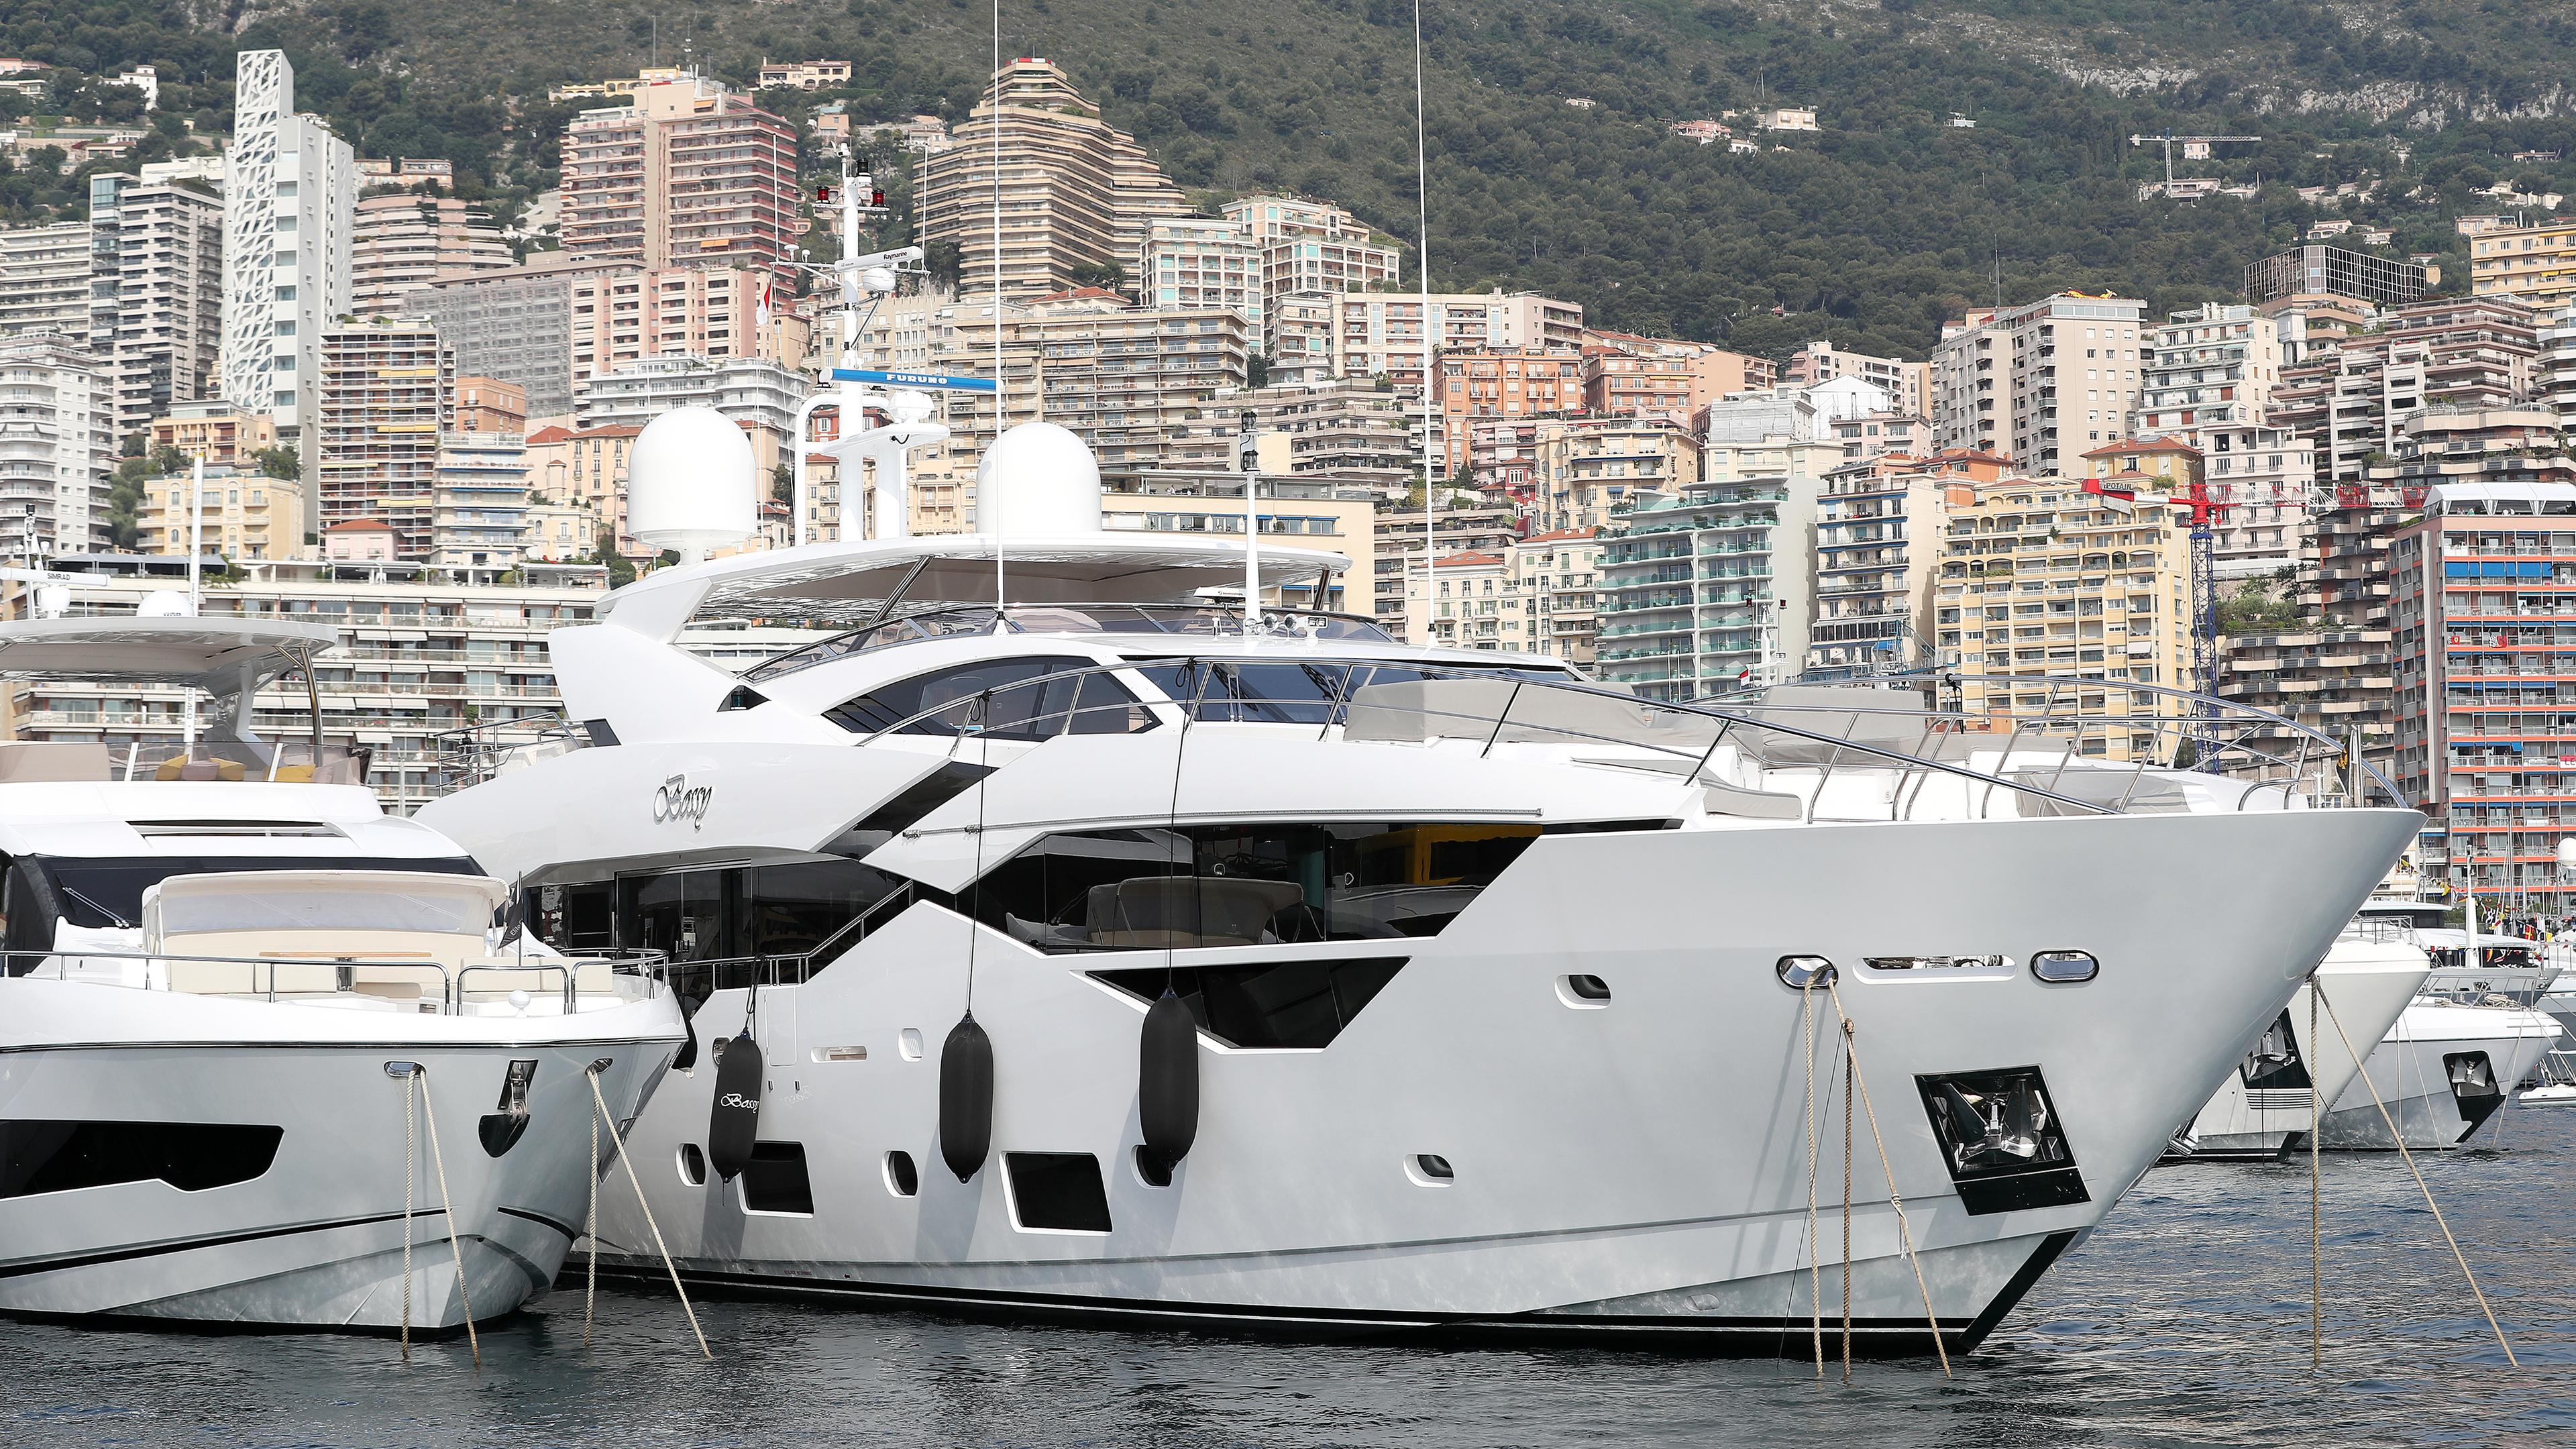 Luxusjachten im Hafen von Monaco, aufgenommen am 25.05.2019